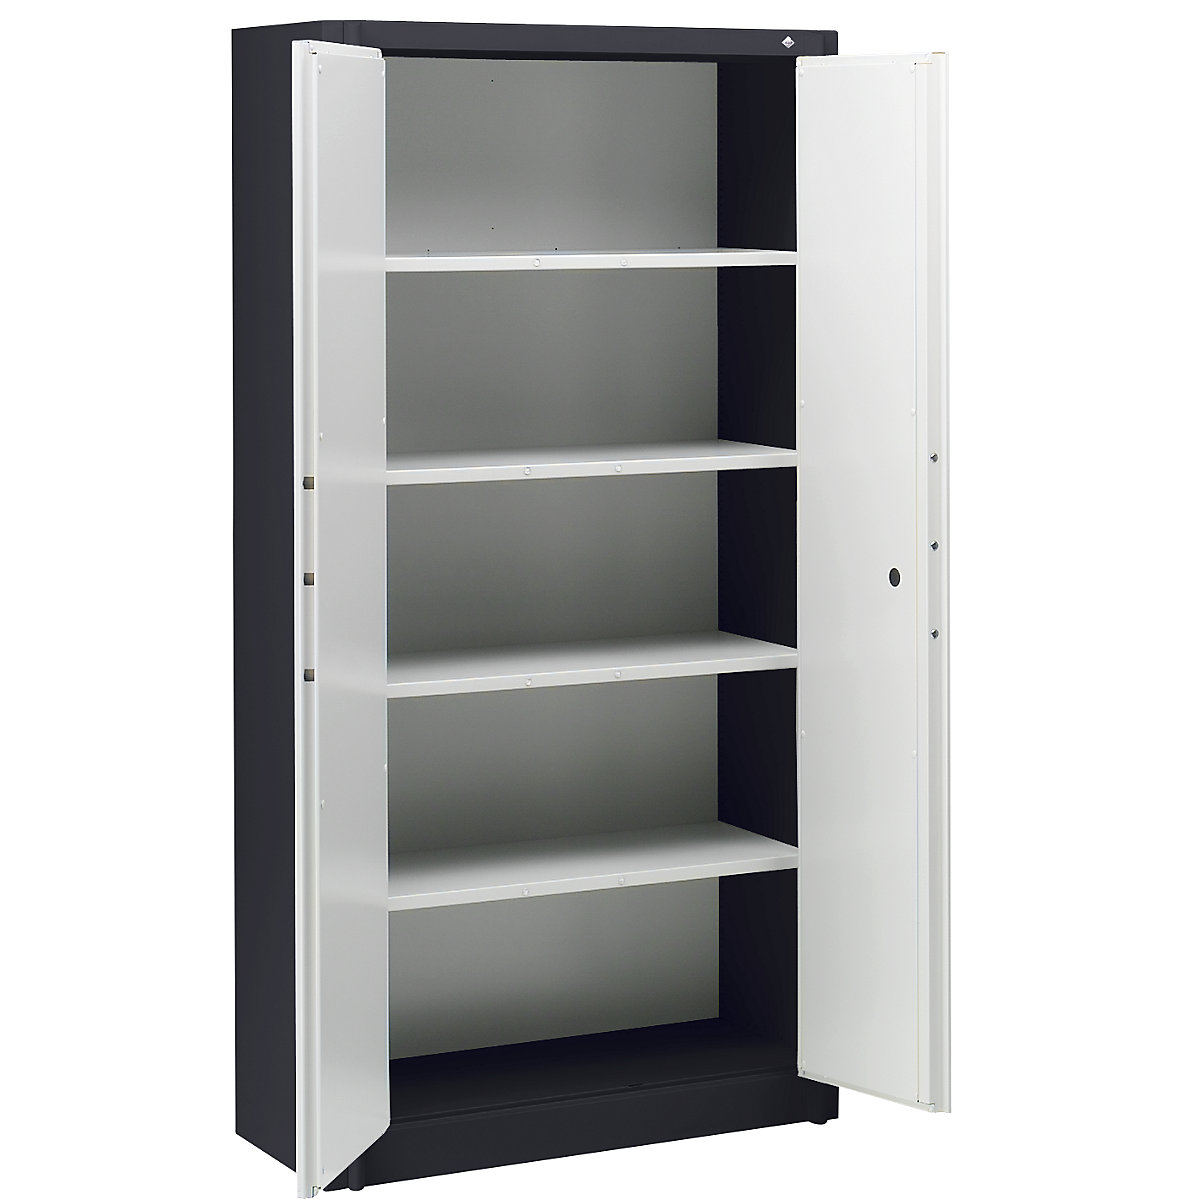 Steel cupboard, fireproof – C+P, DIN 4102 compliant, HxWxD 1950 x 930 x 500 mm, black grey/light grey-17